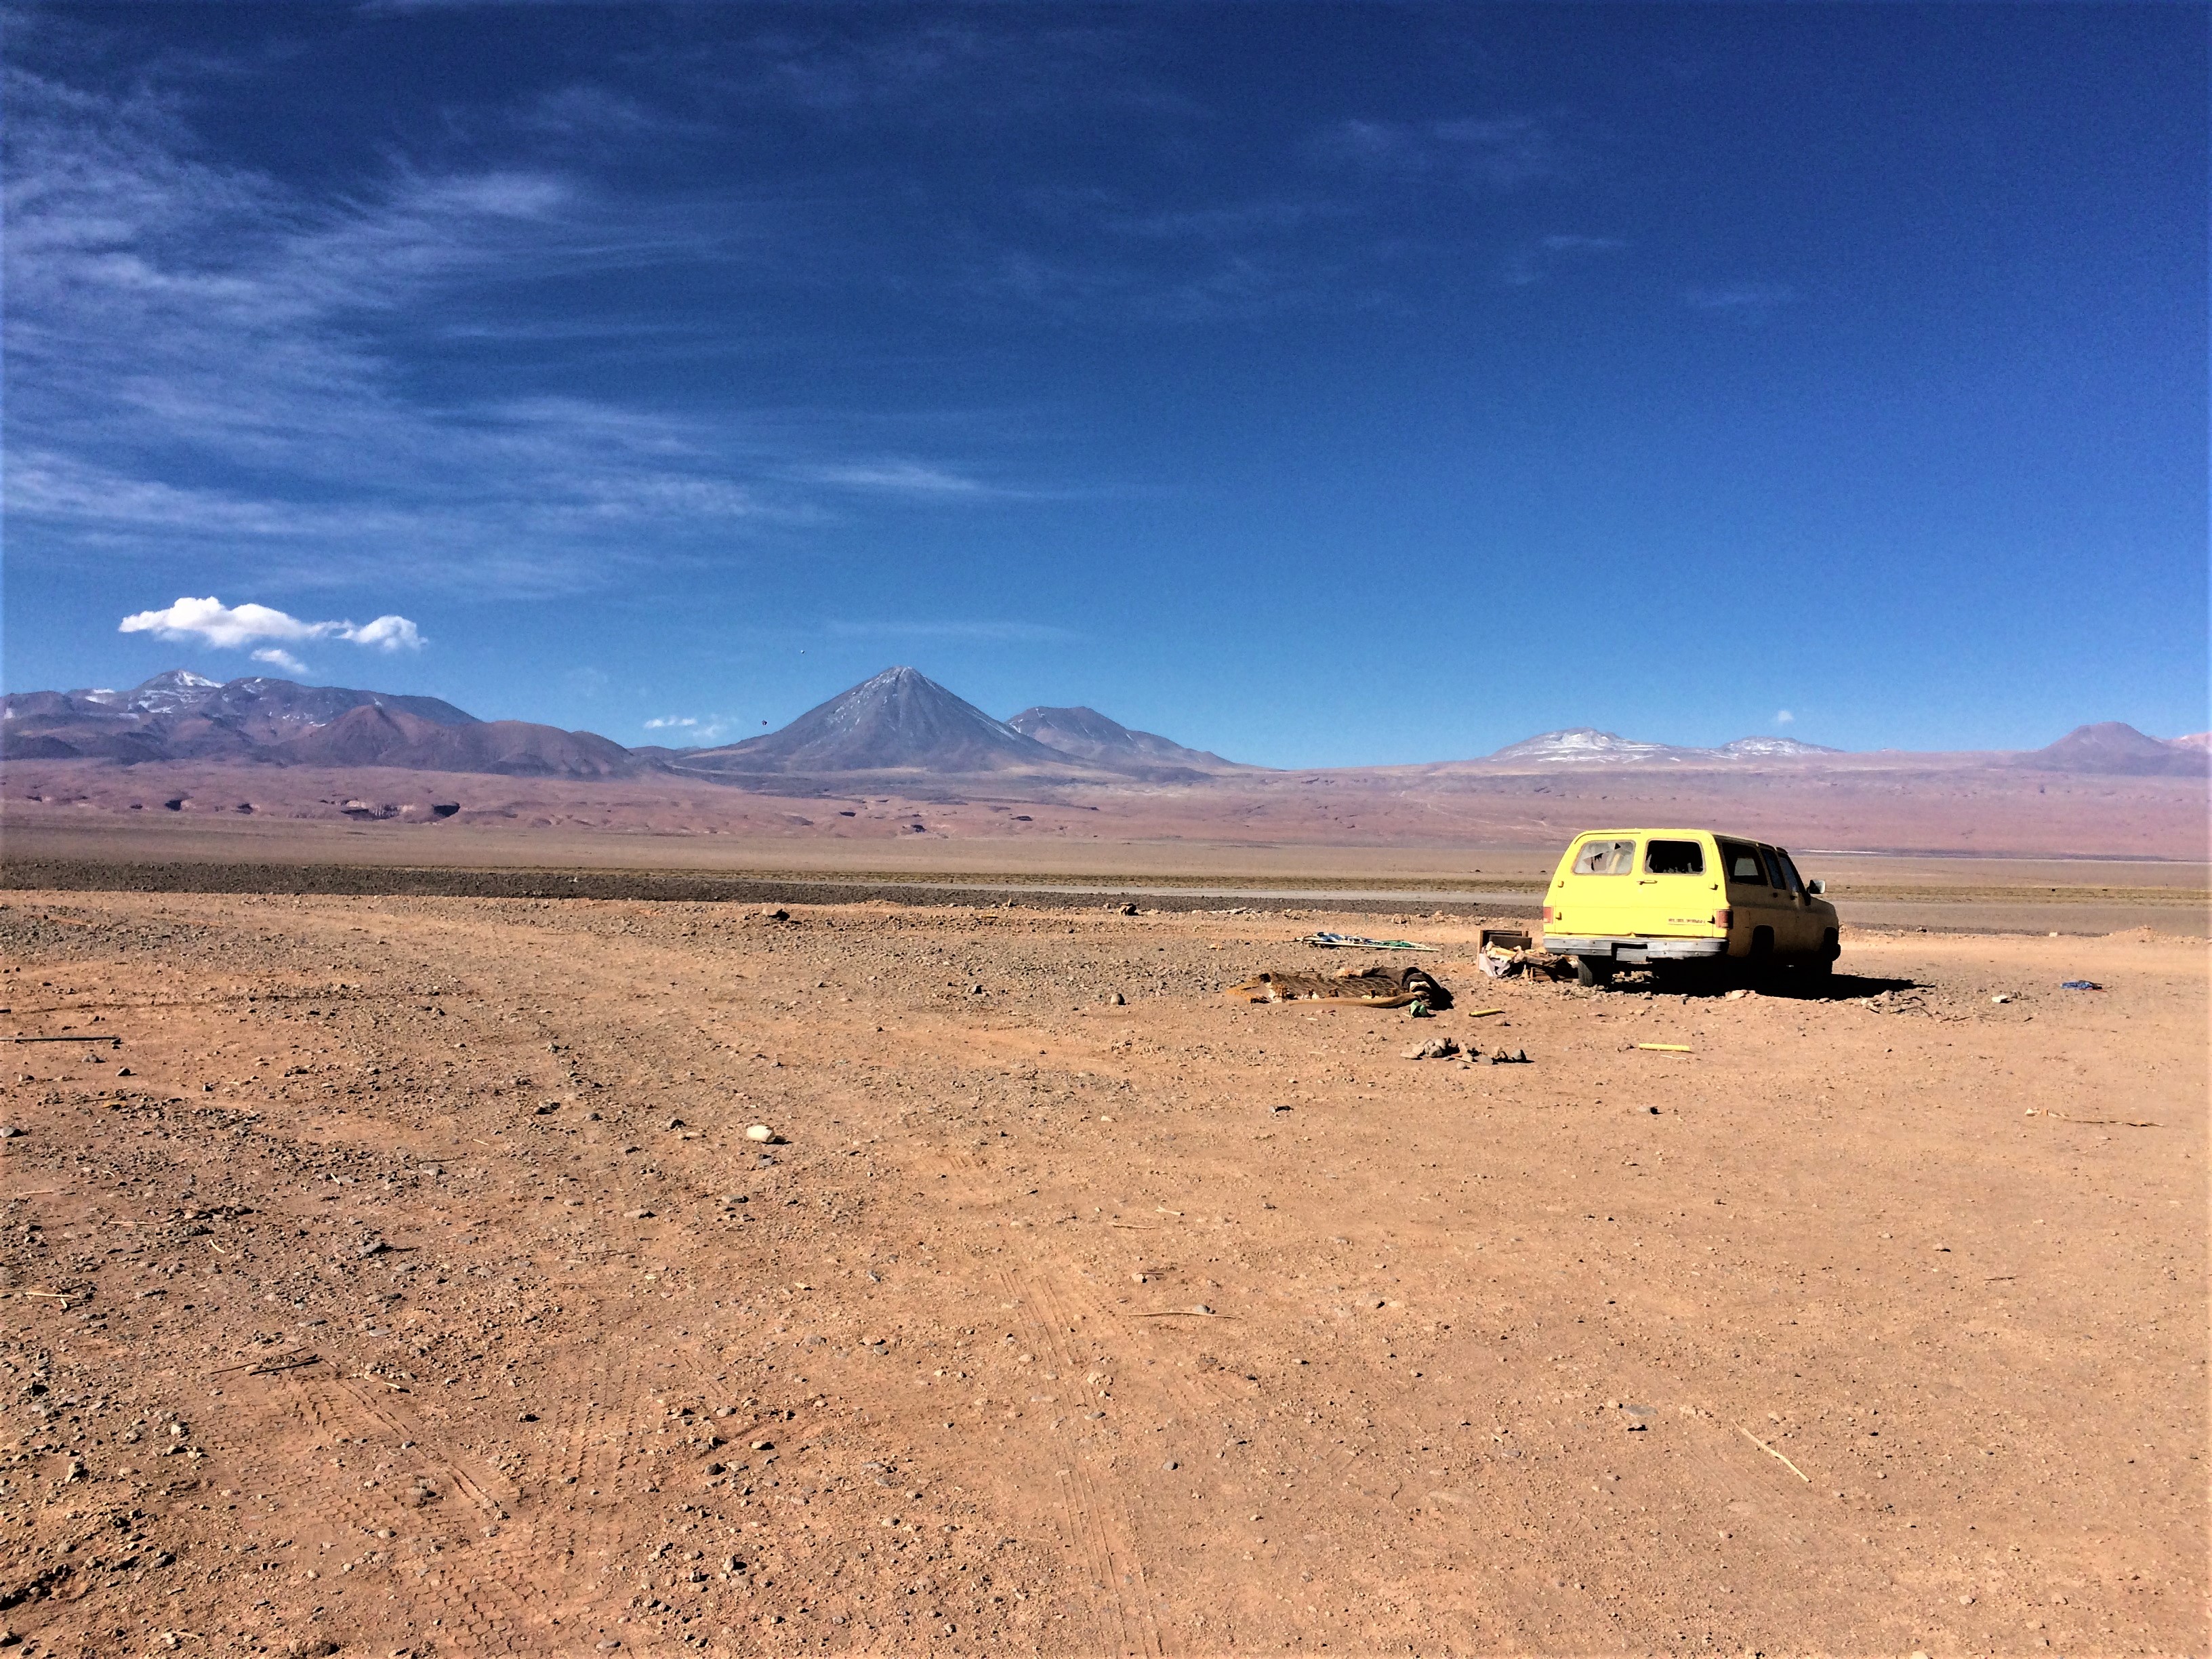 File:Auto abandonado en el desierto.jpg - Wikimedia Commons